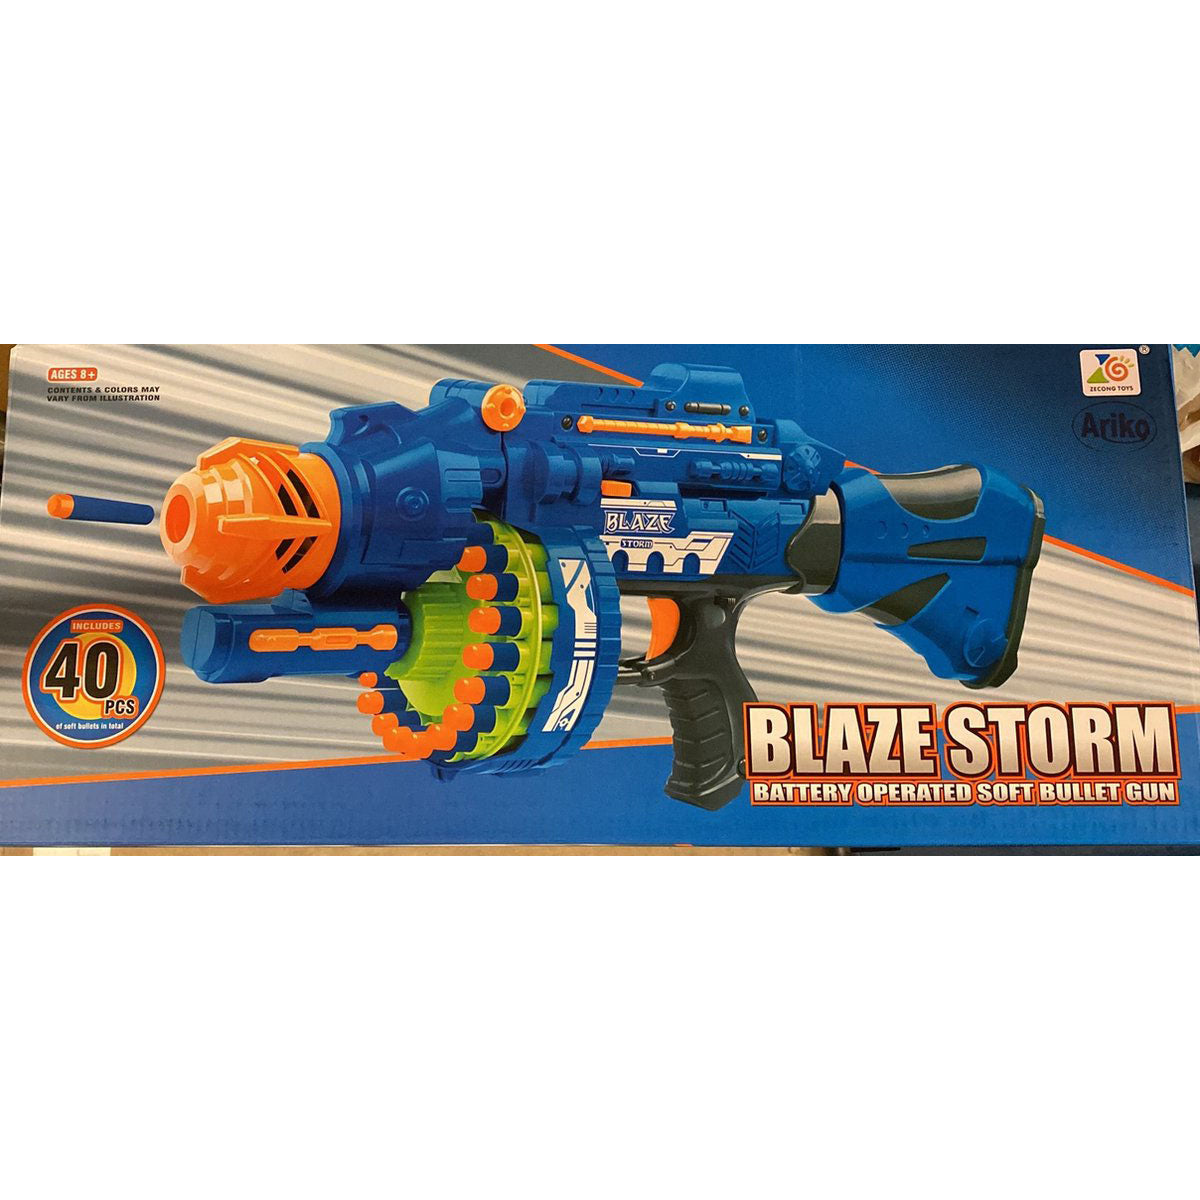 Ariko Blaze Storm Nerf shooter - Grand format - Avec 80 cartouches et son - Piles Phillips incluses - Édition limitée